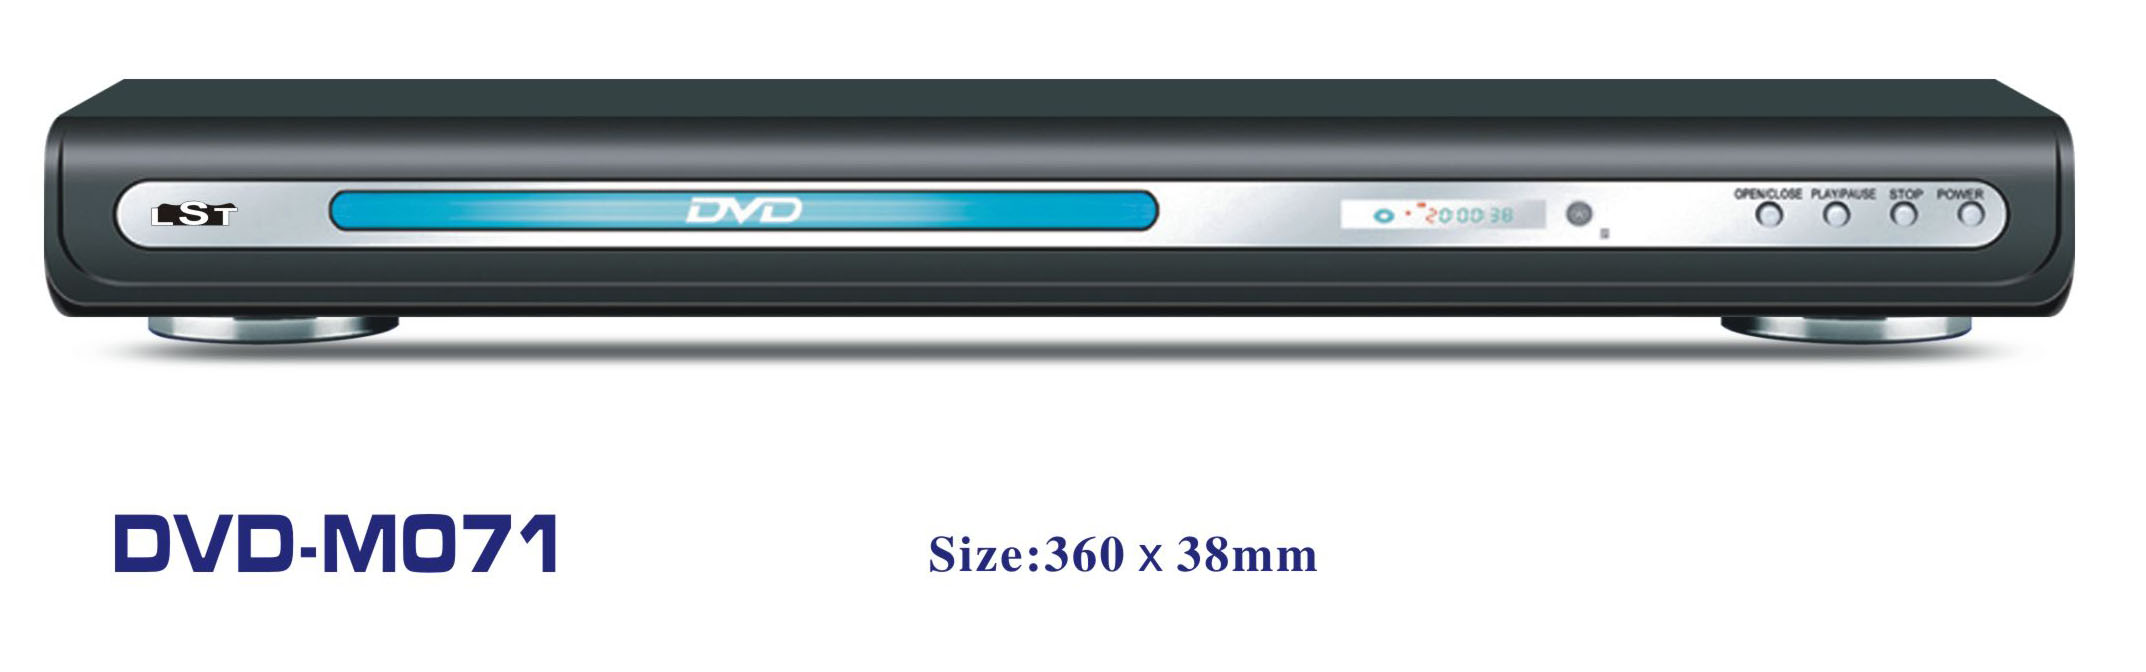 DVD Player: DVD-M071